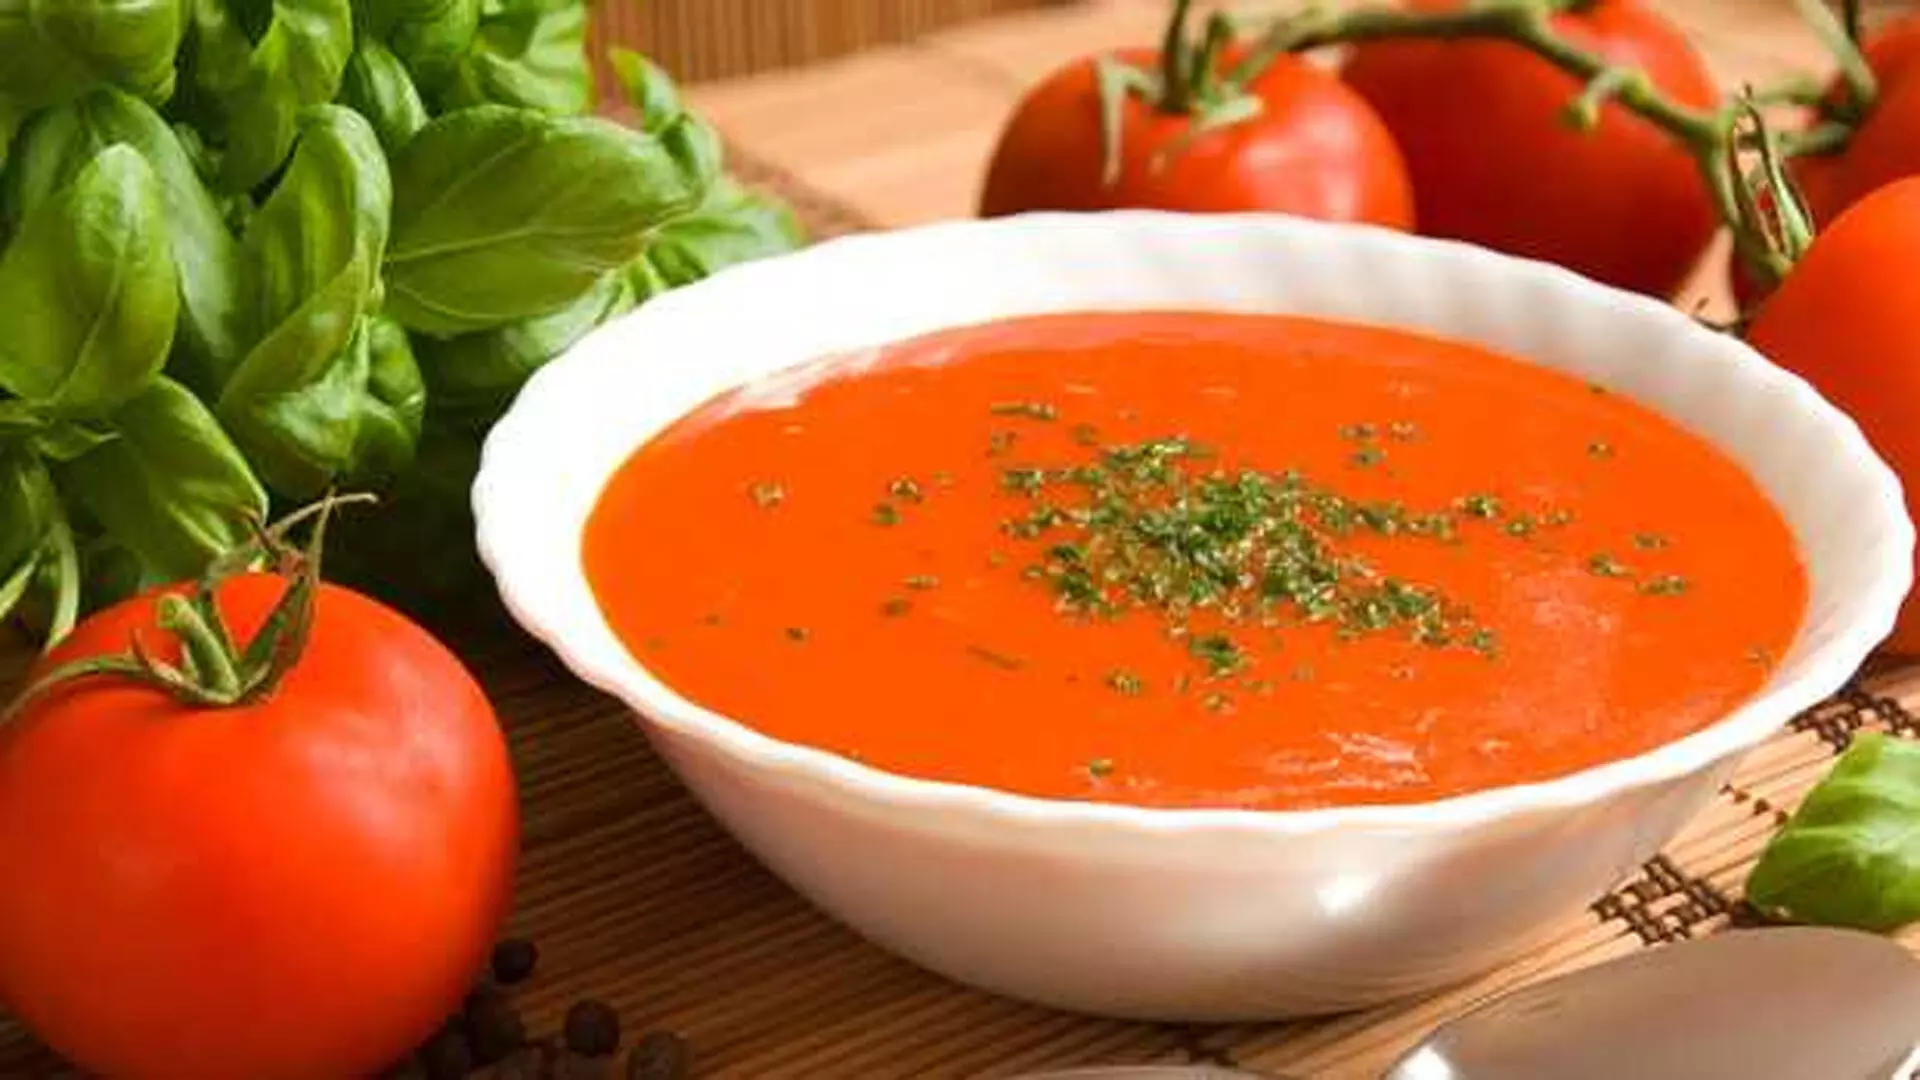 गाजर का गरमागरम सूप होता है पोषक तत्वों से भरपूर,